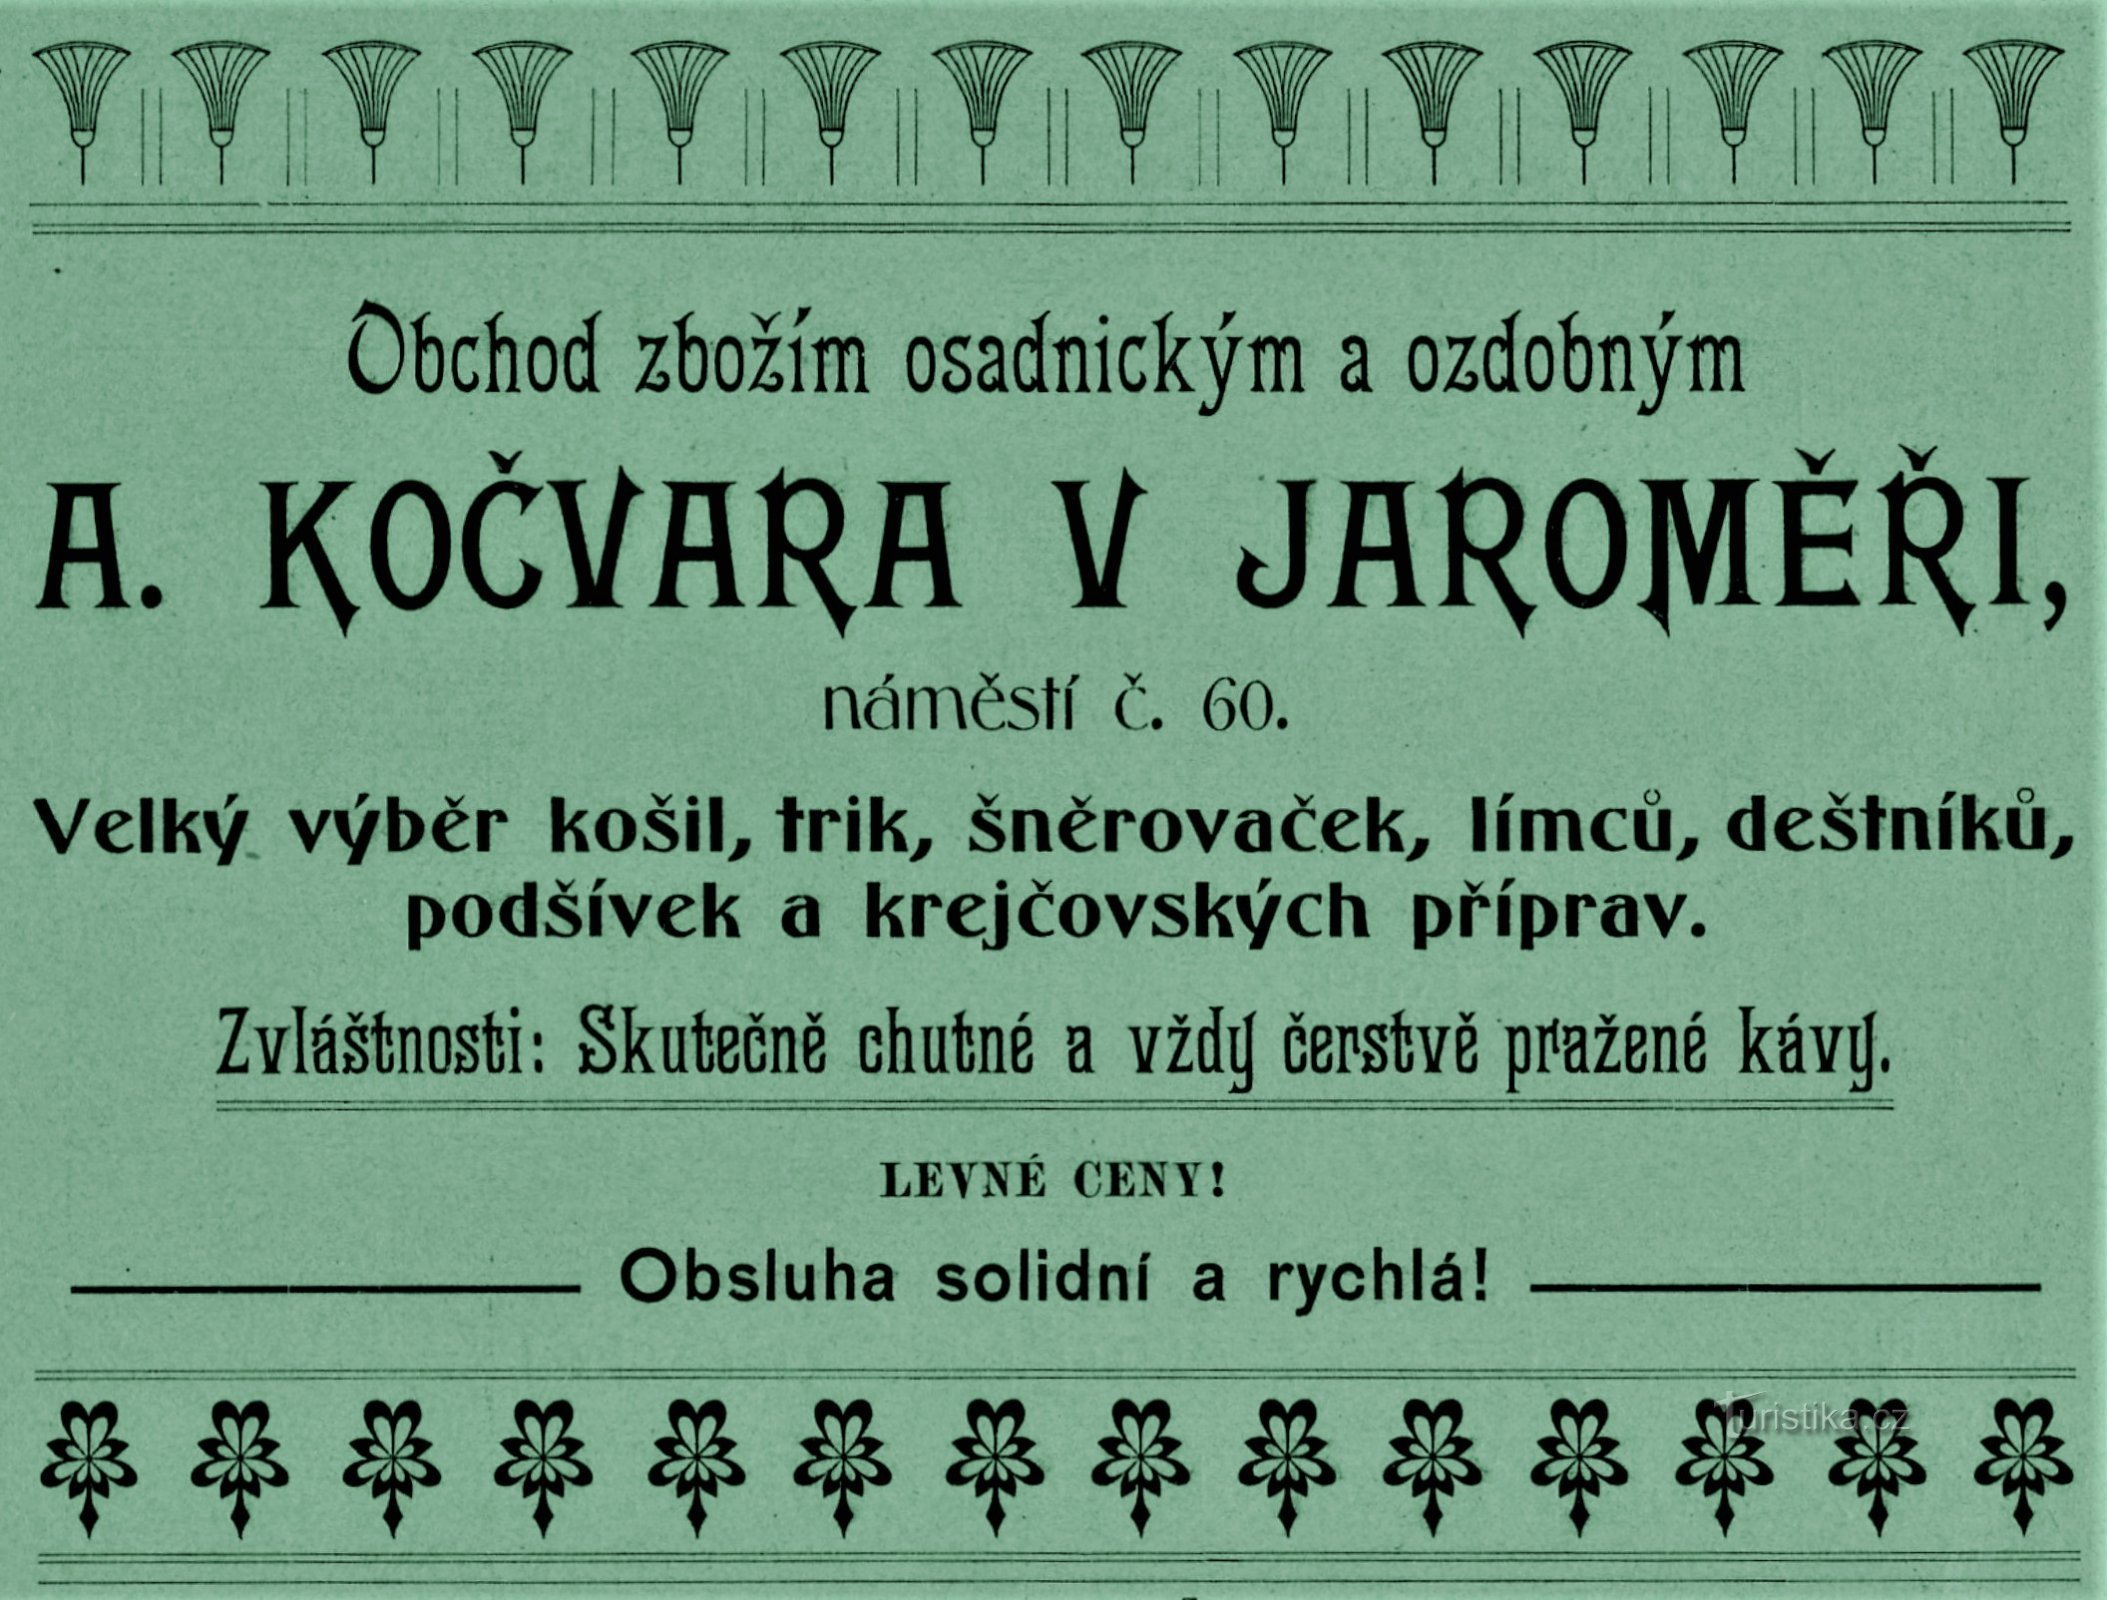 Современная реклама компании А. Кочвара в Яромерже 1903 г.